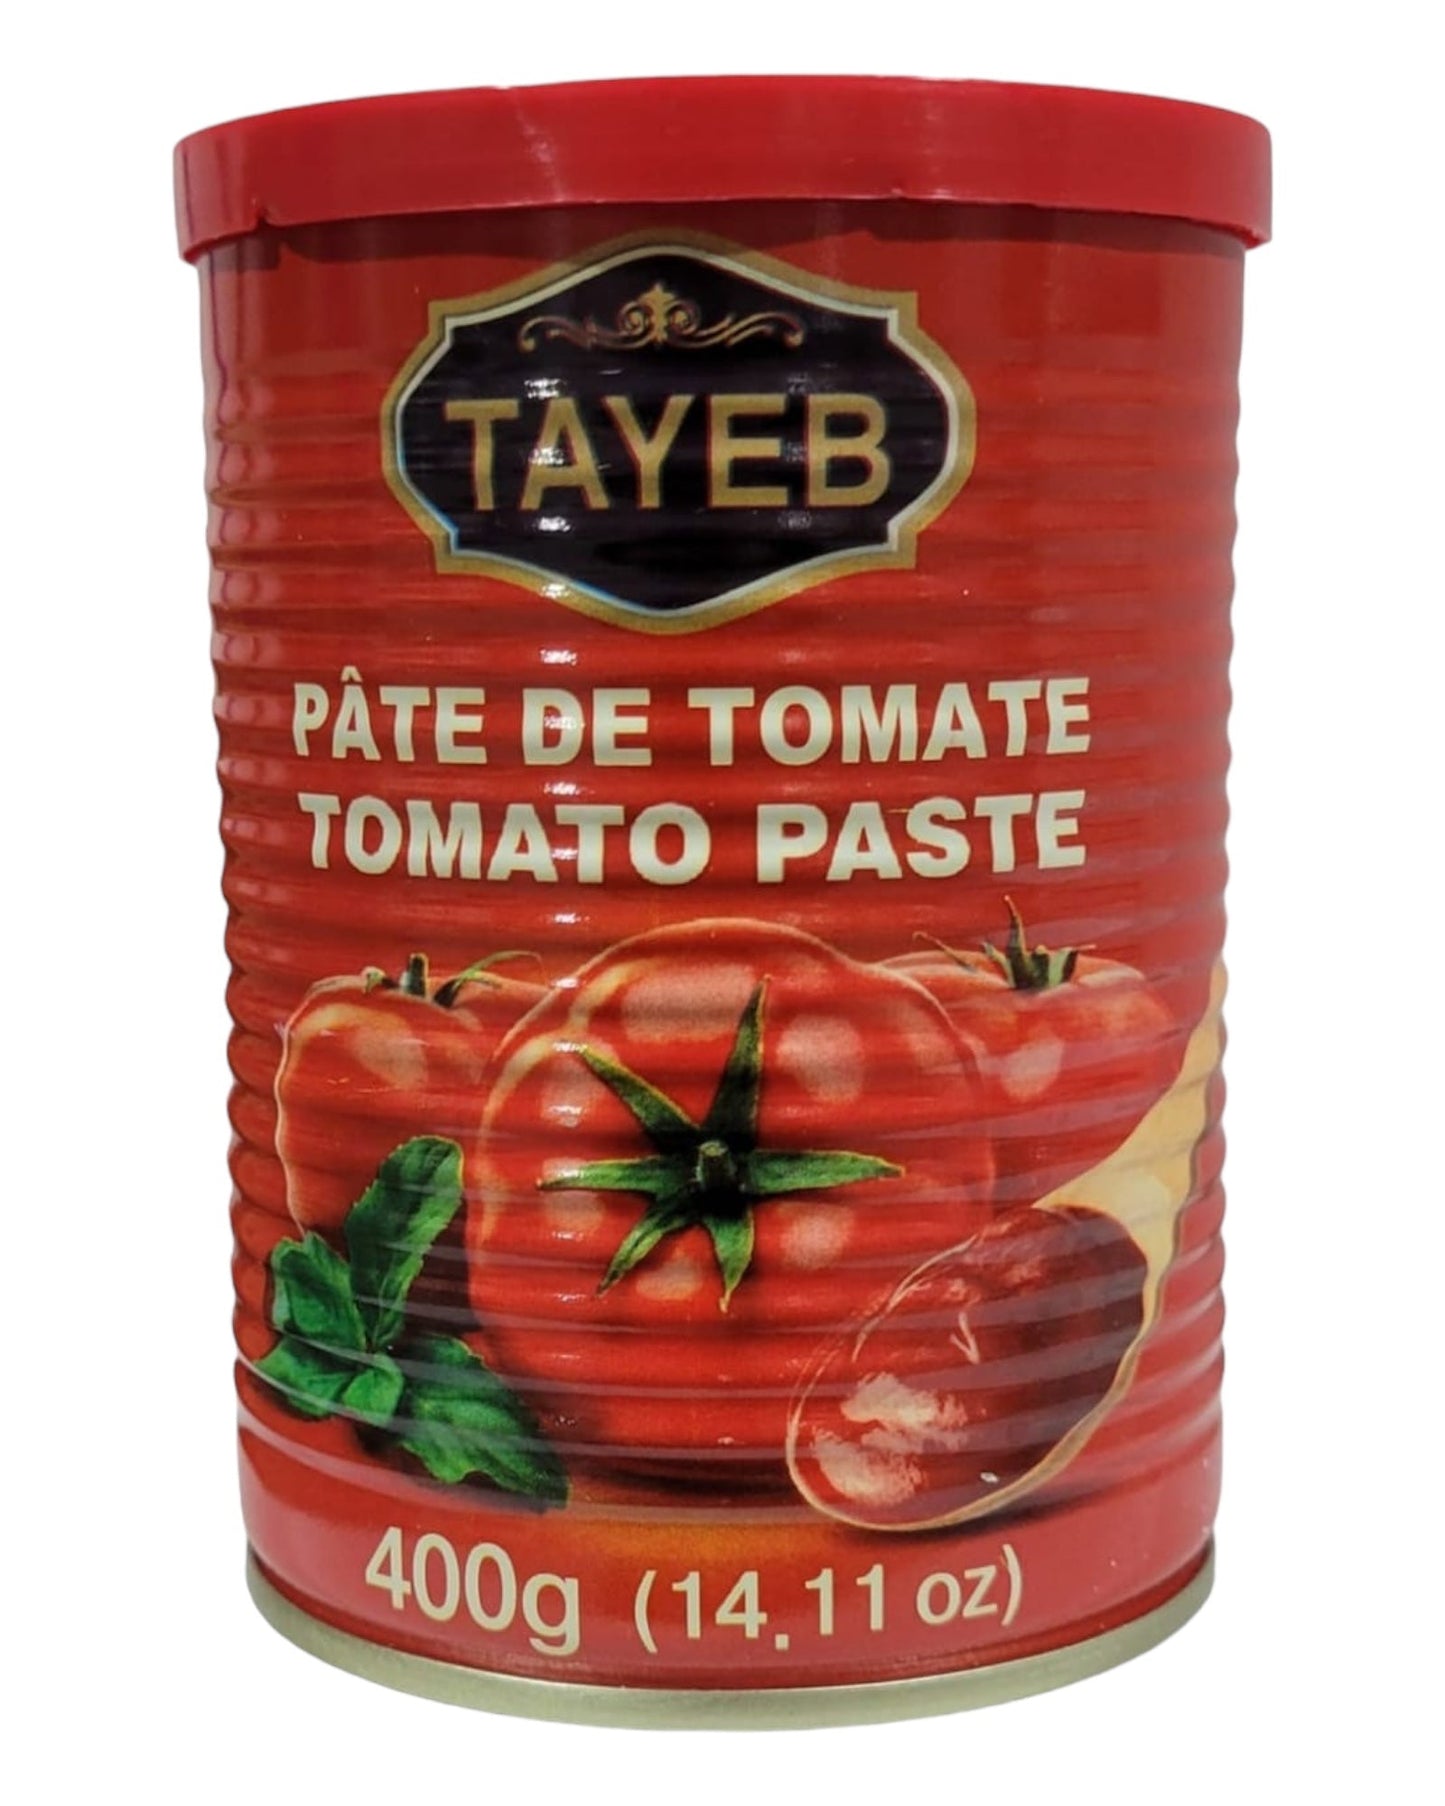 Tayeb Tomato Paste 400g